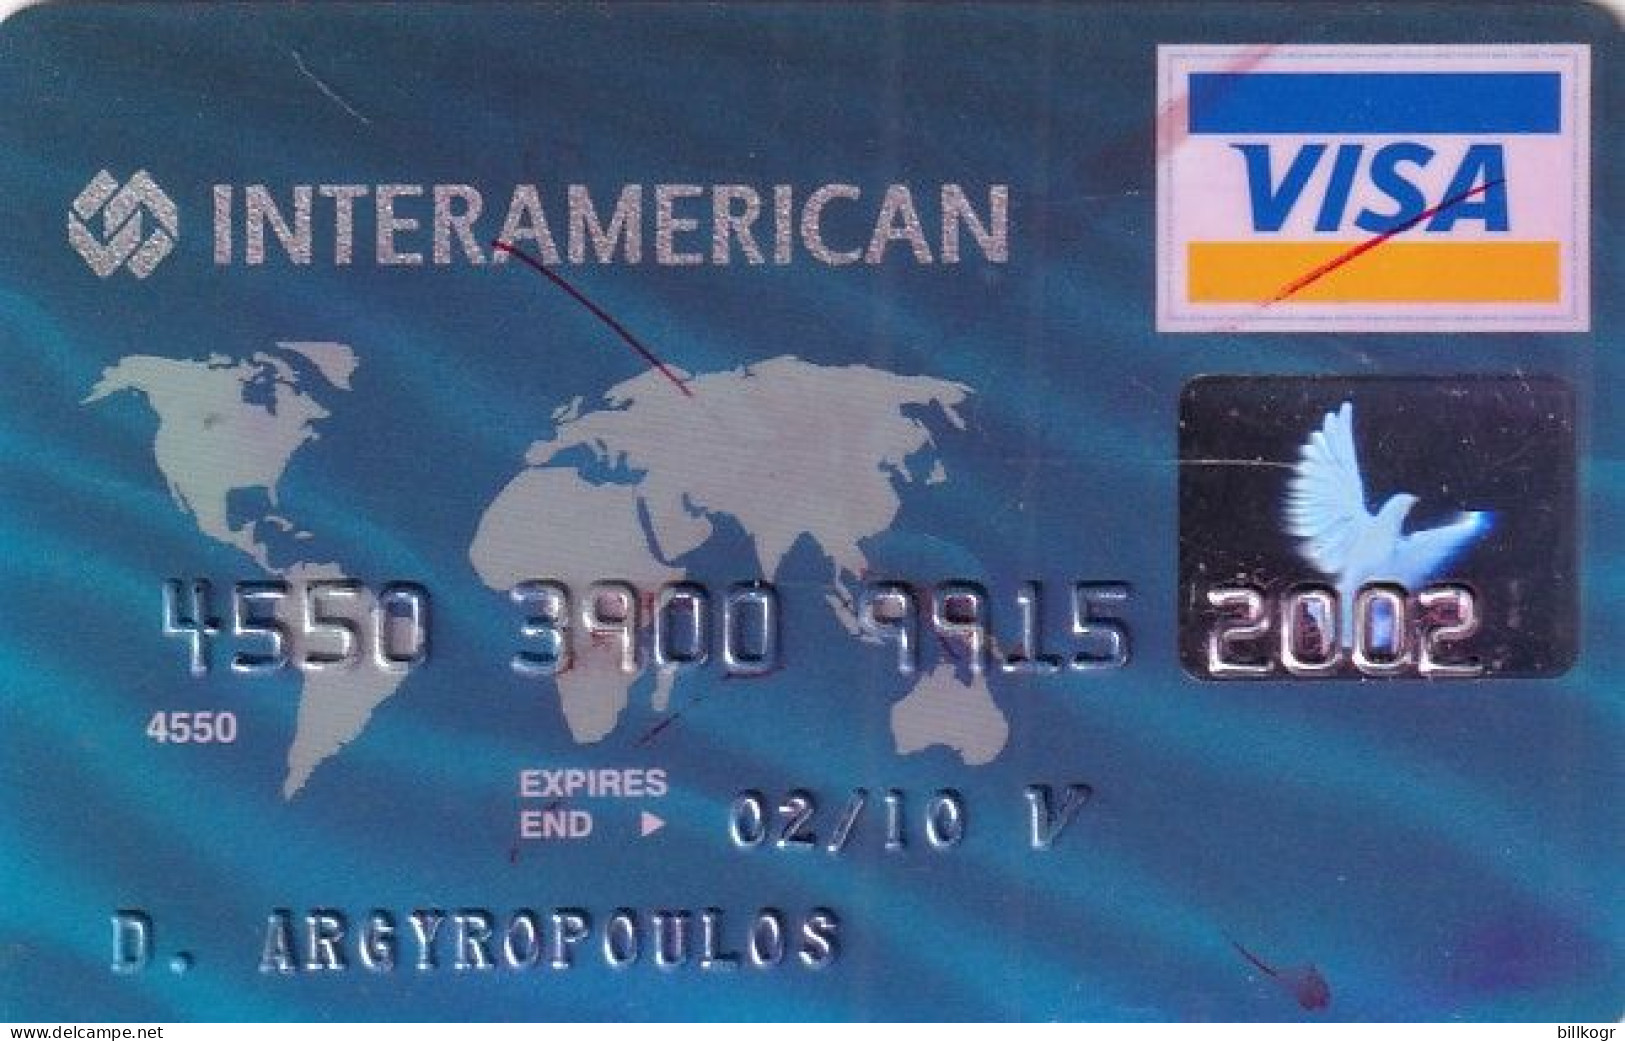 GREECE - Interamerican, EFG Eurobank Ergasias Visa, 05/04, Used - Tarjetas De Crédito (caducidad Min 10 Años)